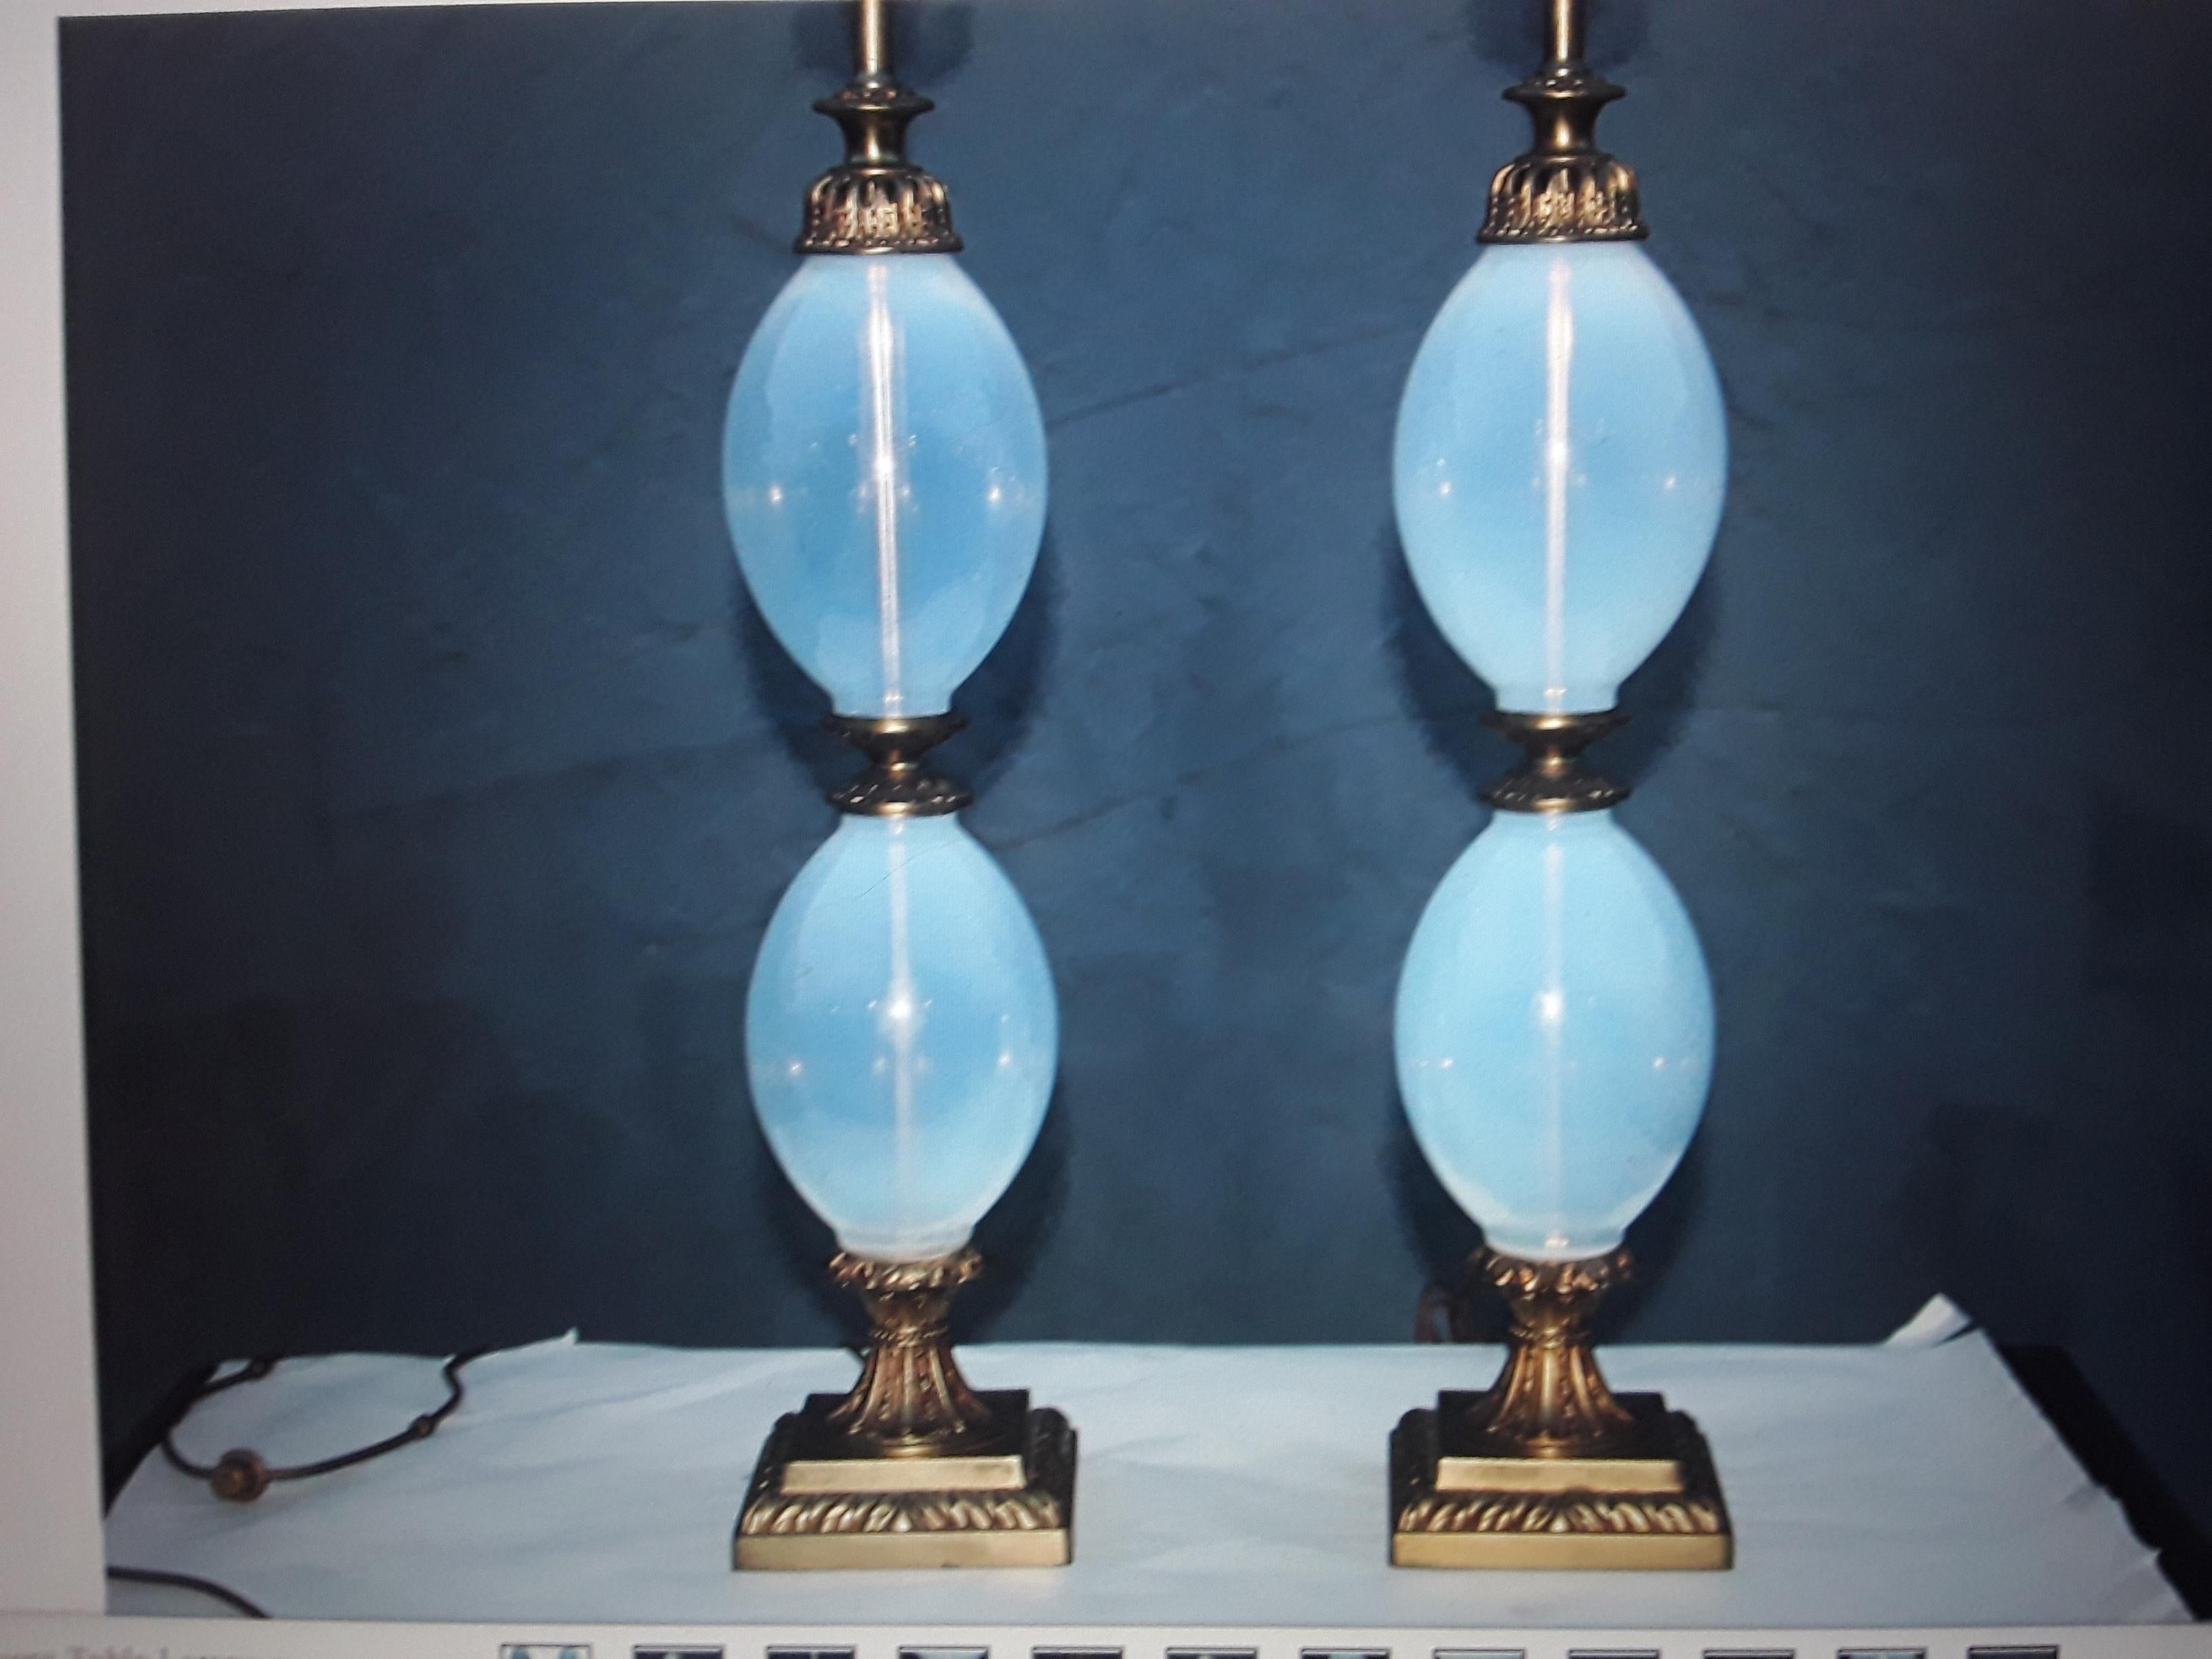 Paire de lampes de table opaline/opalescente bleue Hollywood Regency des années 1940. Ils sont très beaux et arrivent prêts à l'emploi. 